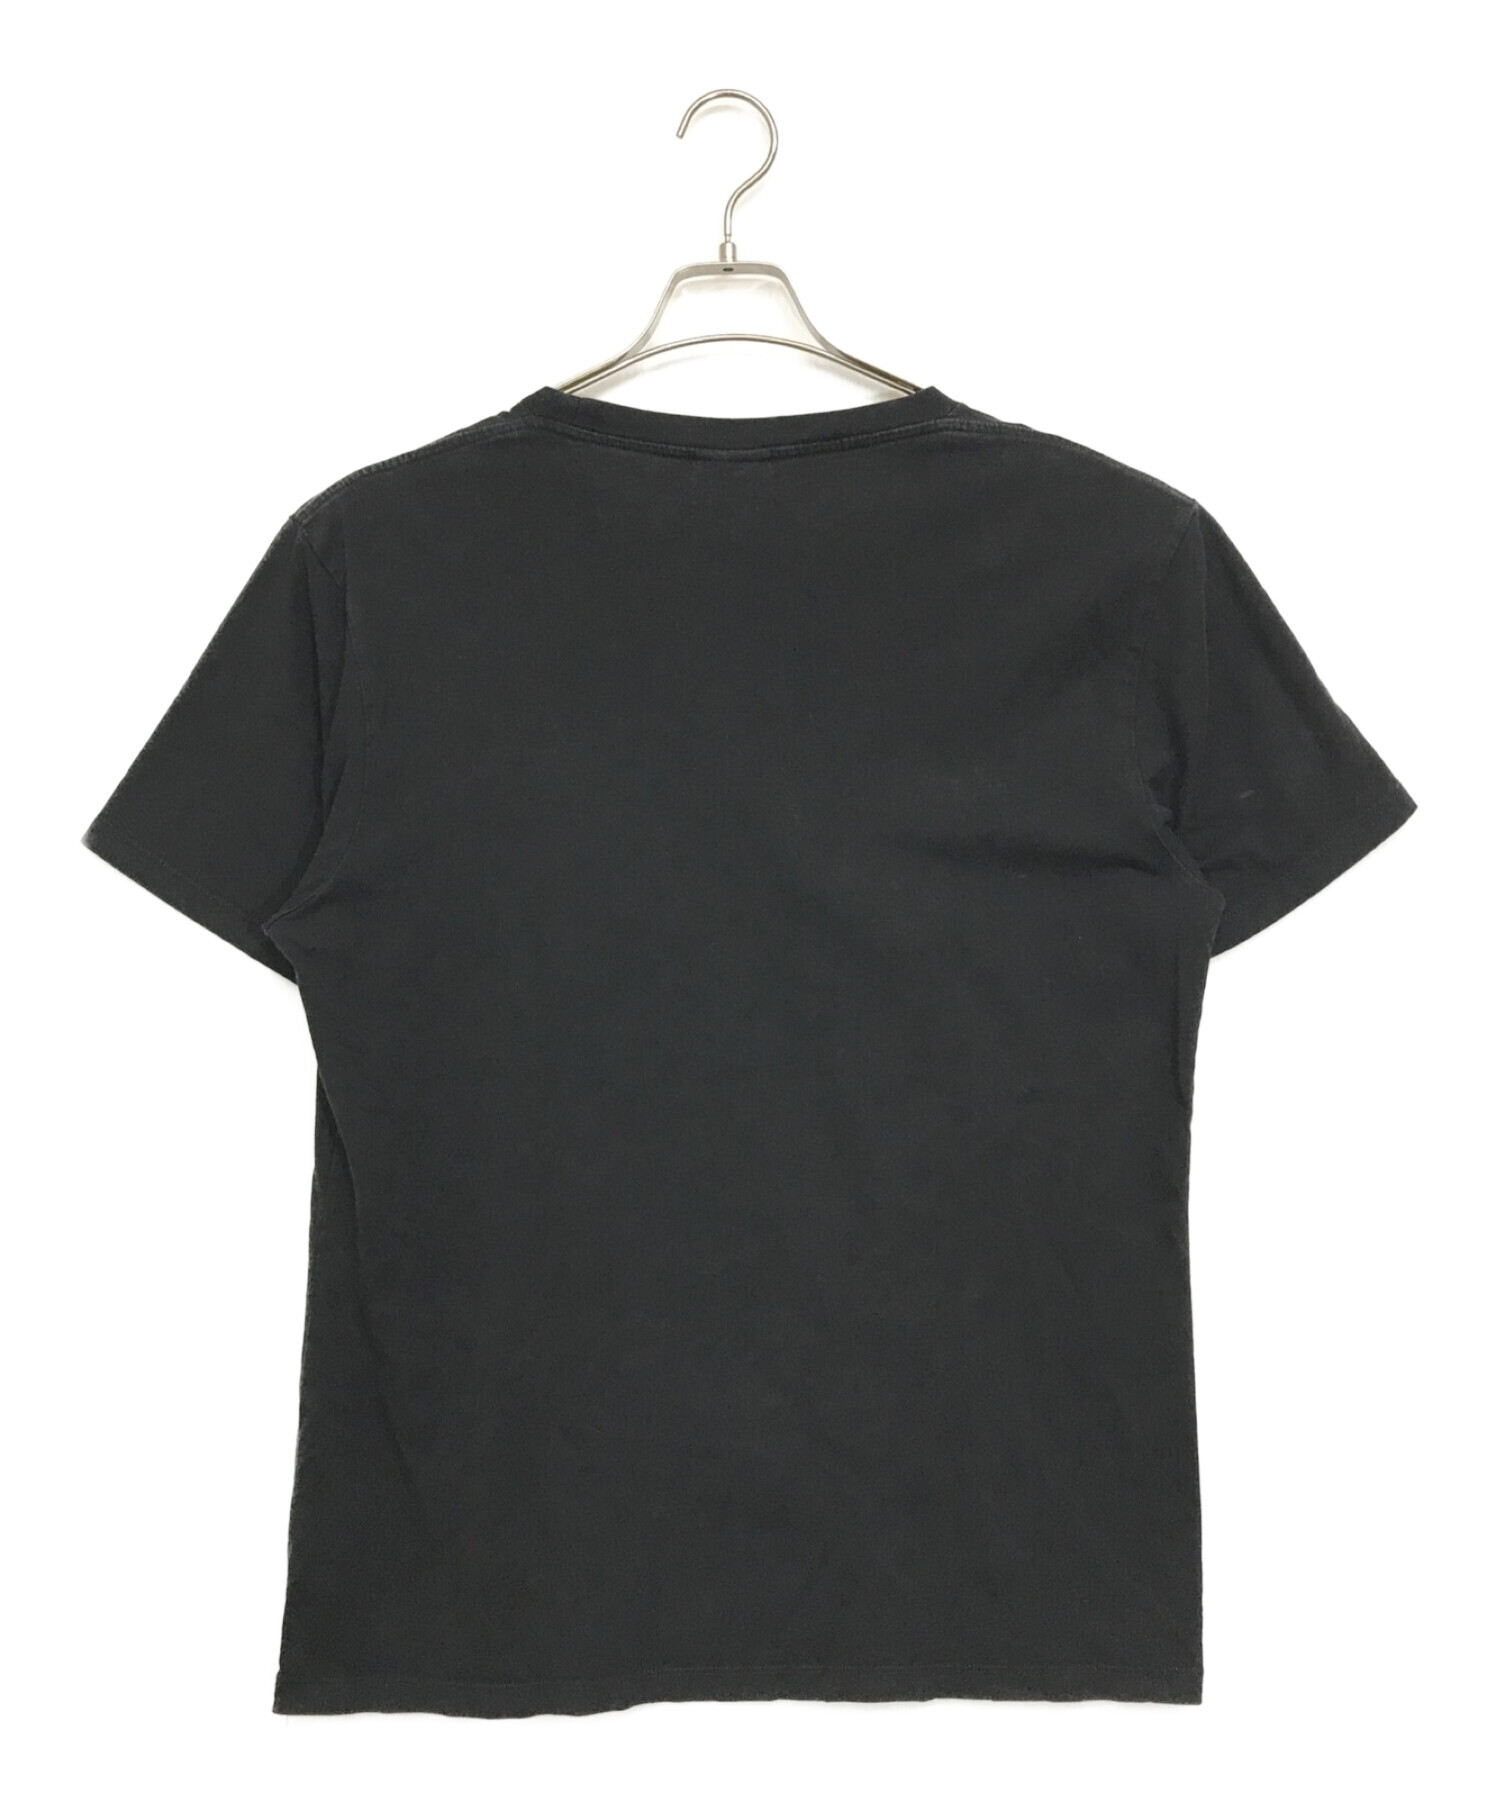 Mサイズ MARCELO BURLON マルセロバーロン Tシャツ 黒 ブラック原産国